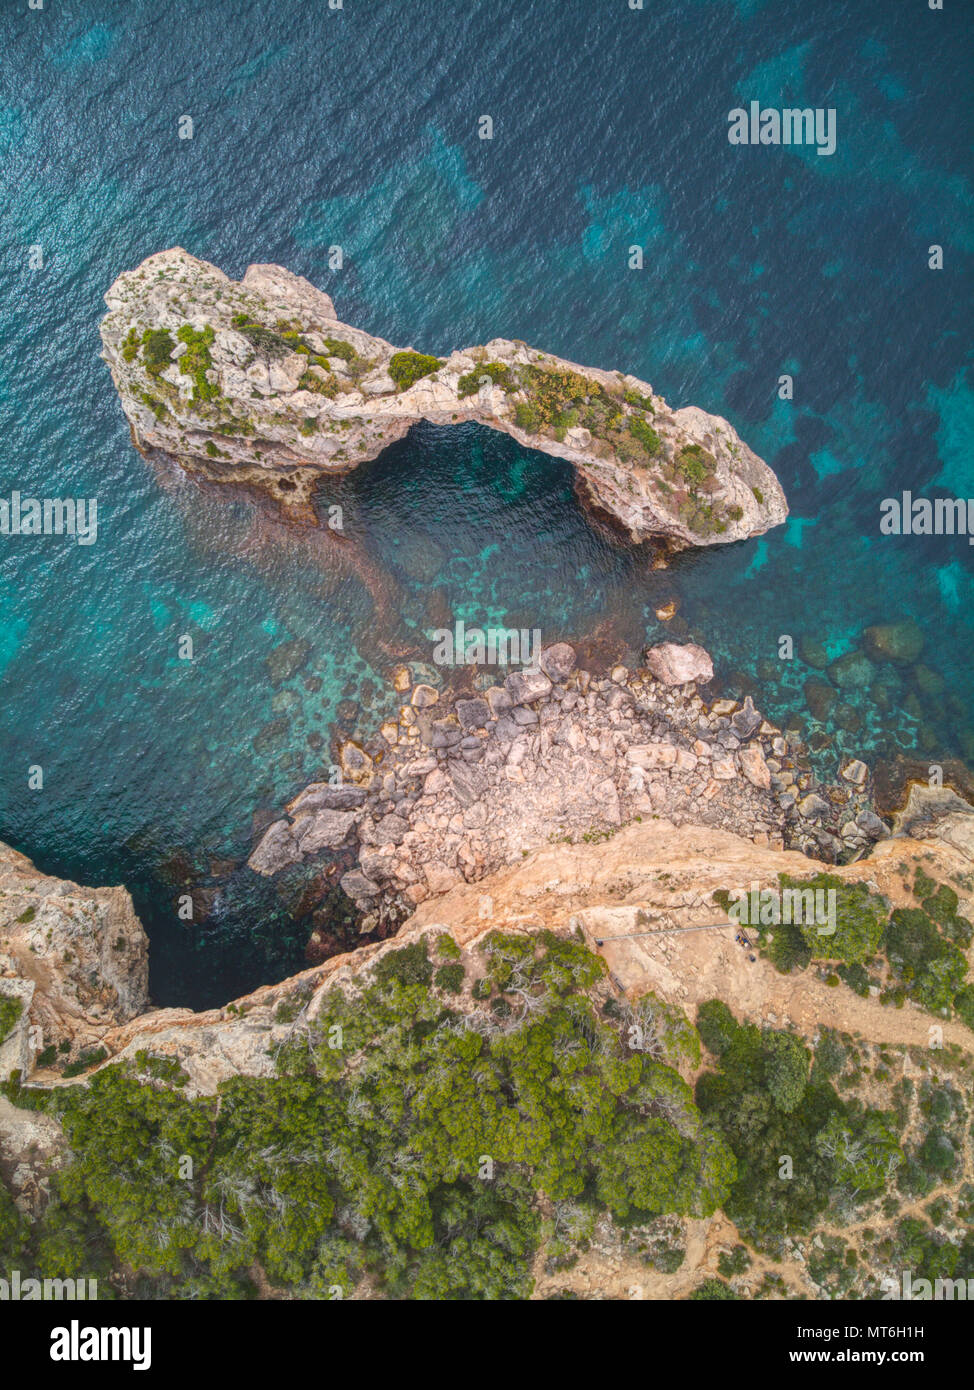 Vue aérienne de Es Pontas, un passage rocheux naturel au large de la côte de Cala Santanyi, Majorque, Iles Baléares, Espagne, Europe Banque D'Images